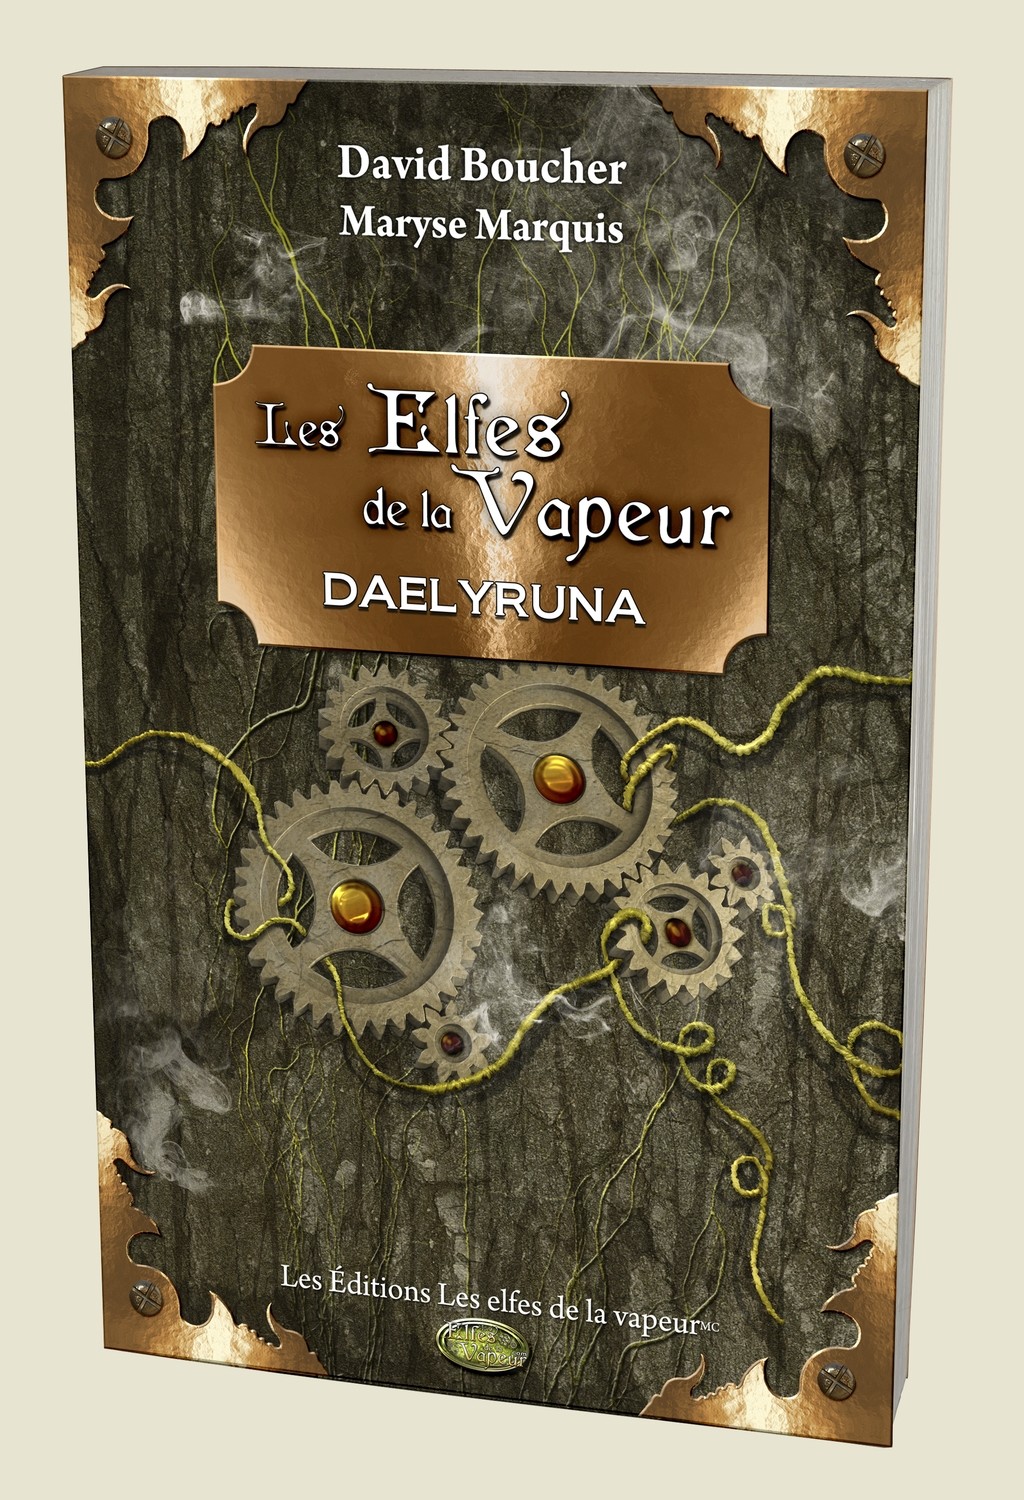 Tome 1 : Daelyruna, édition régulière